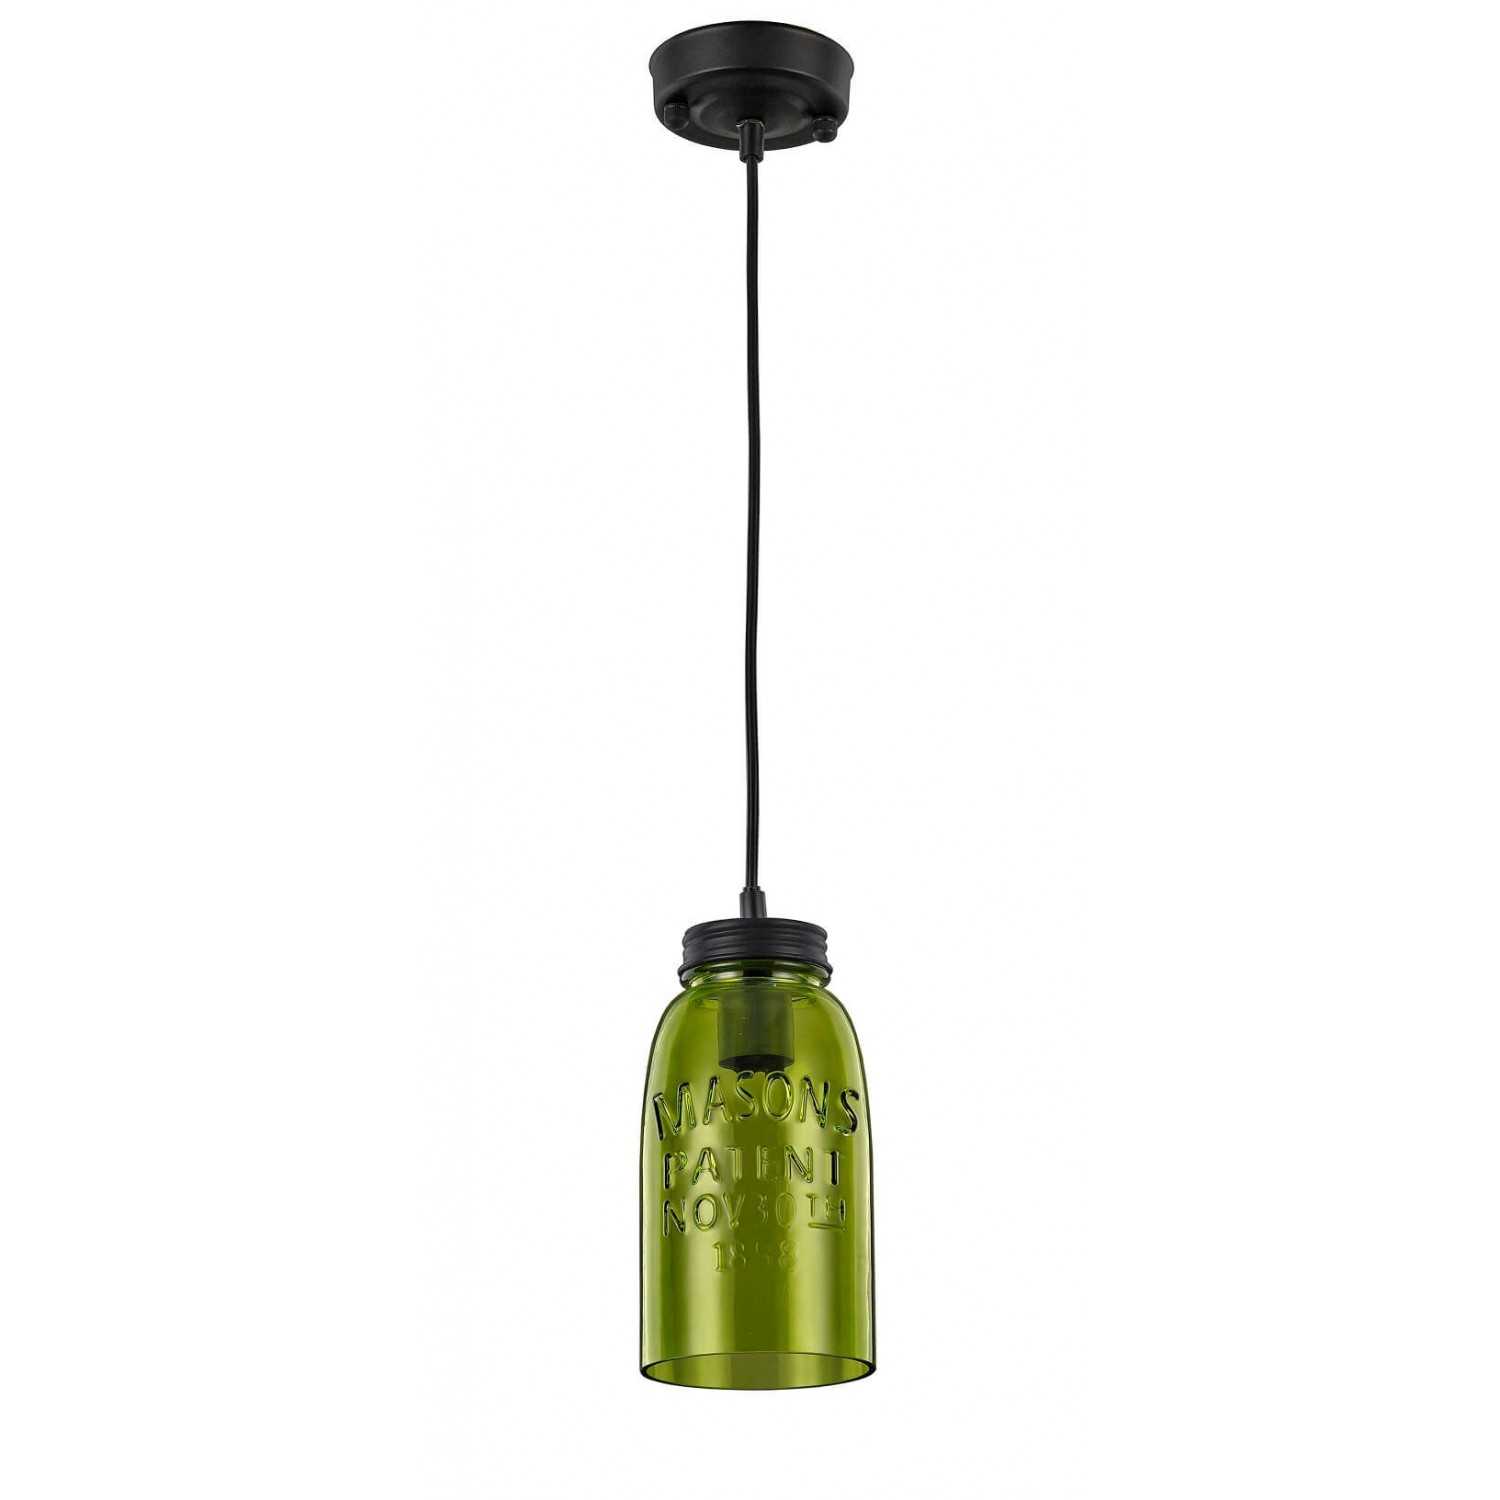 Vasto lampa wisząca fioletowa LP-42086/1P fiolet